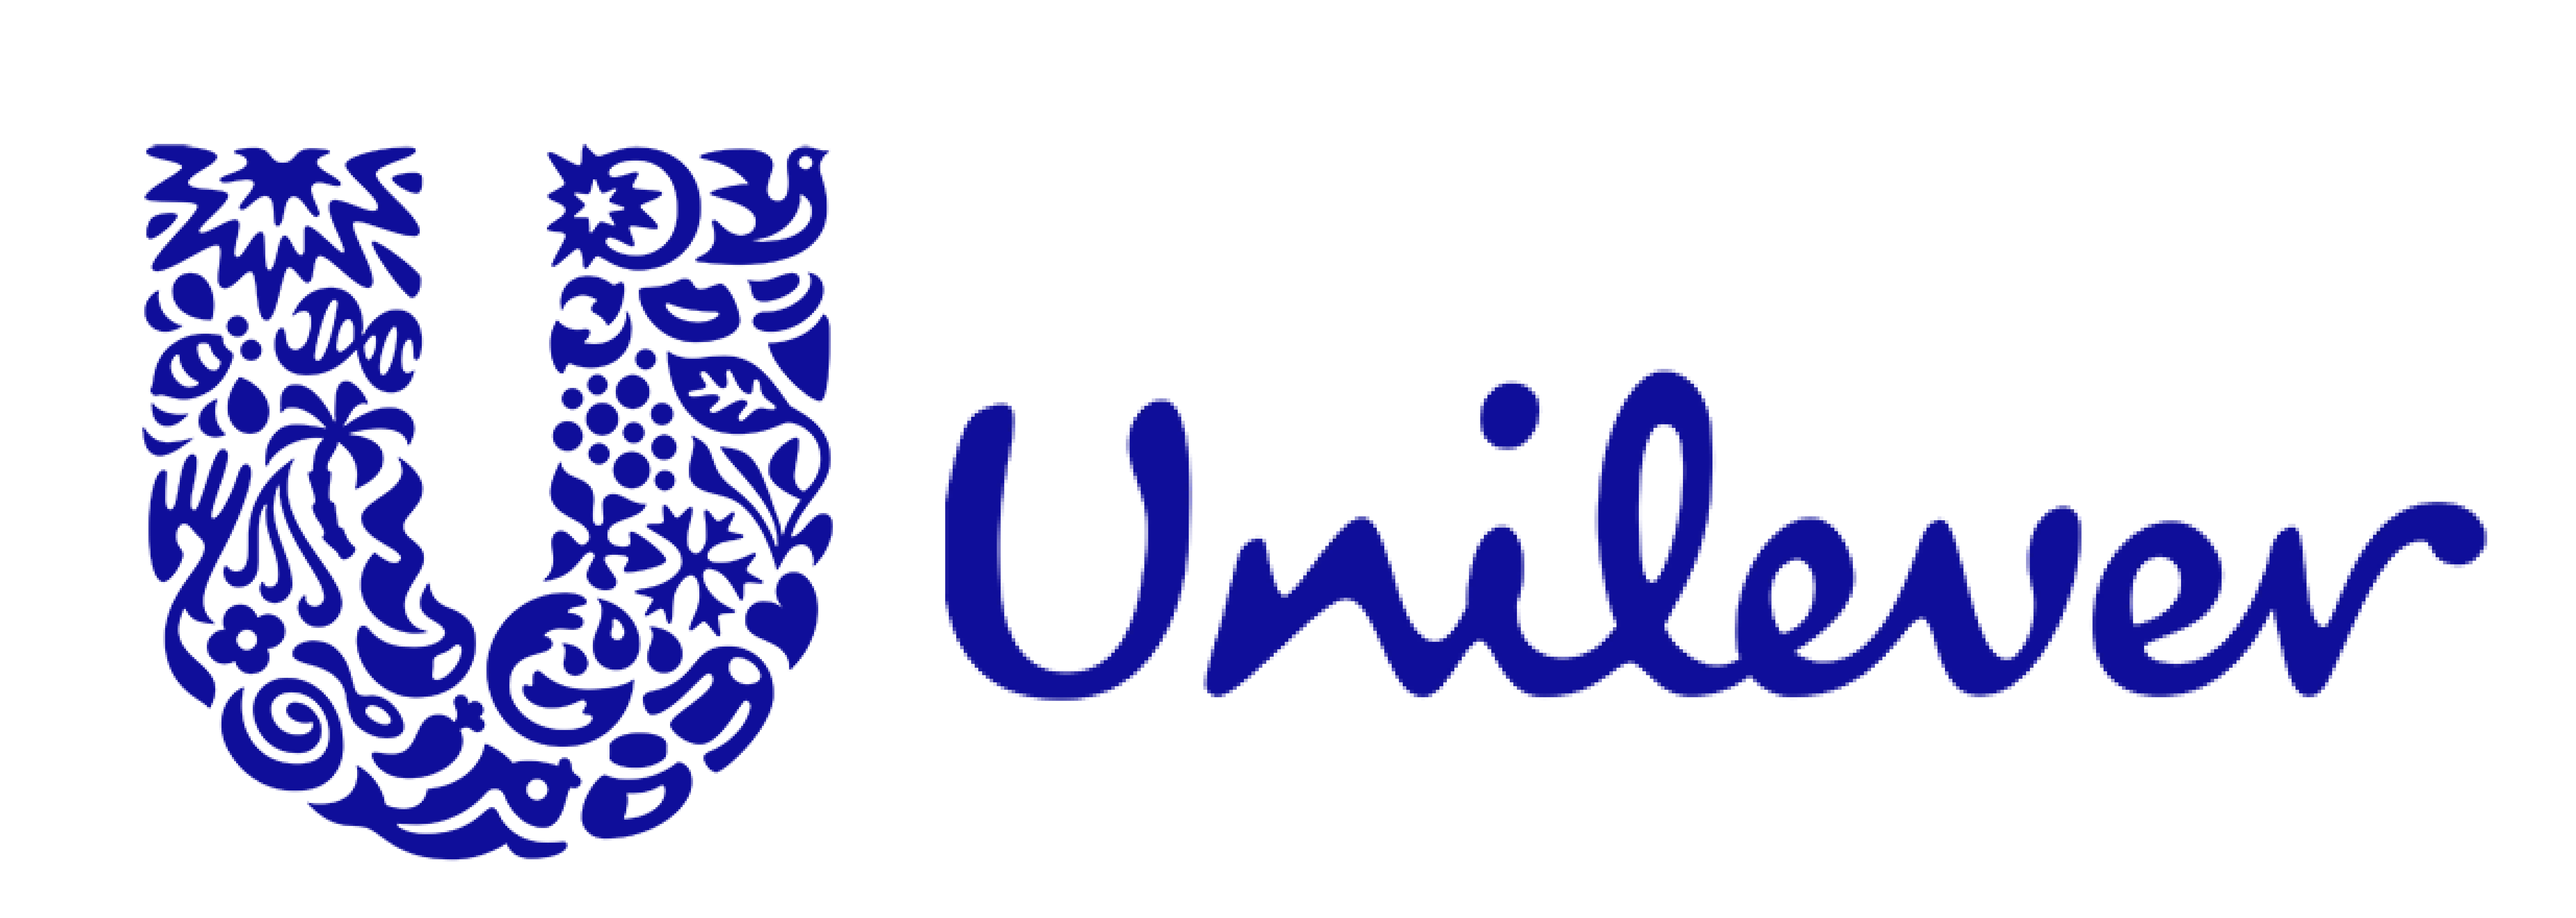 associations-logo